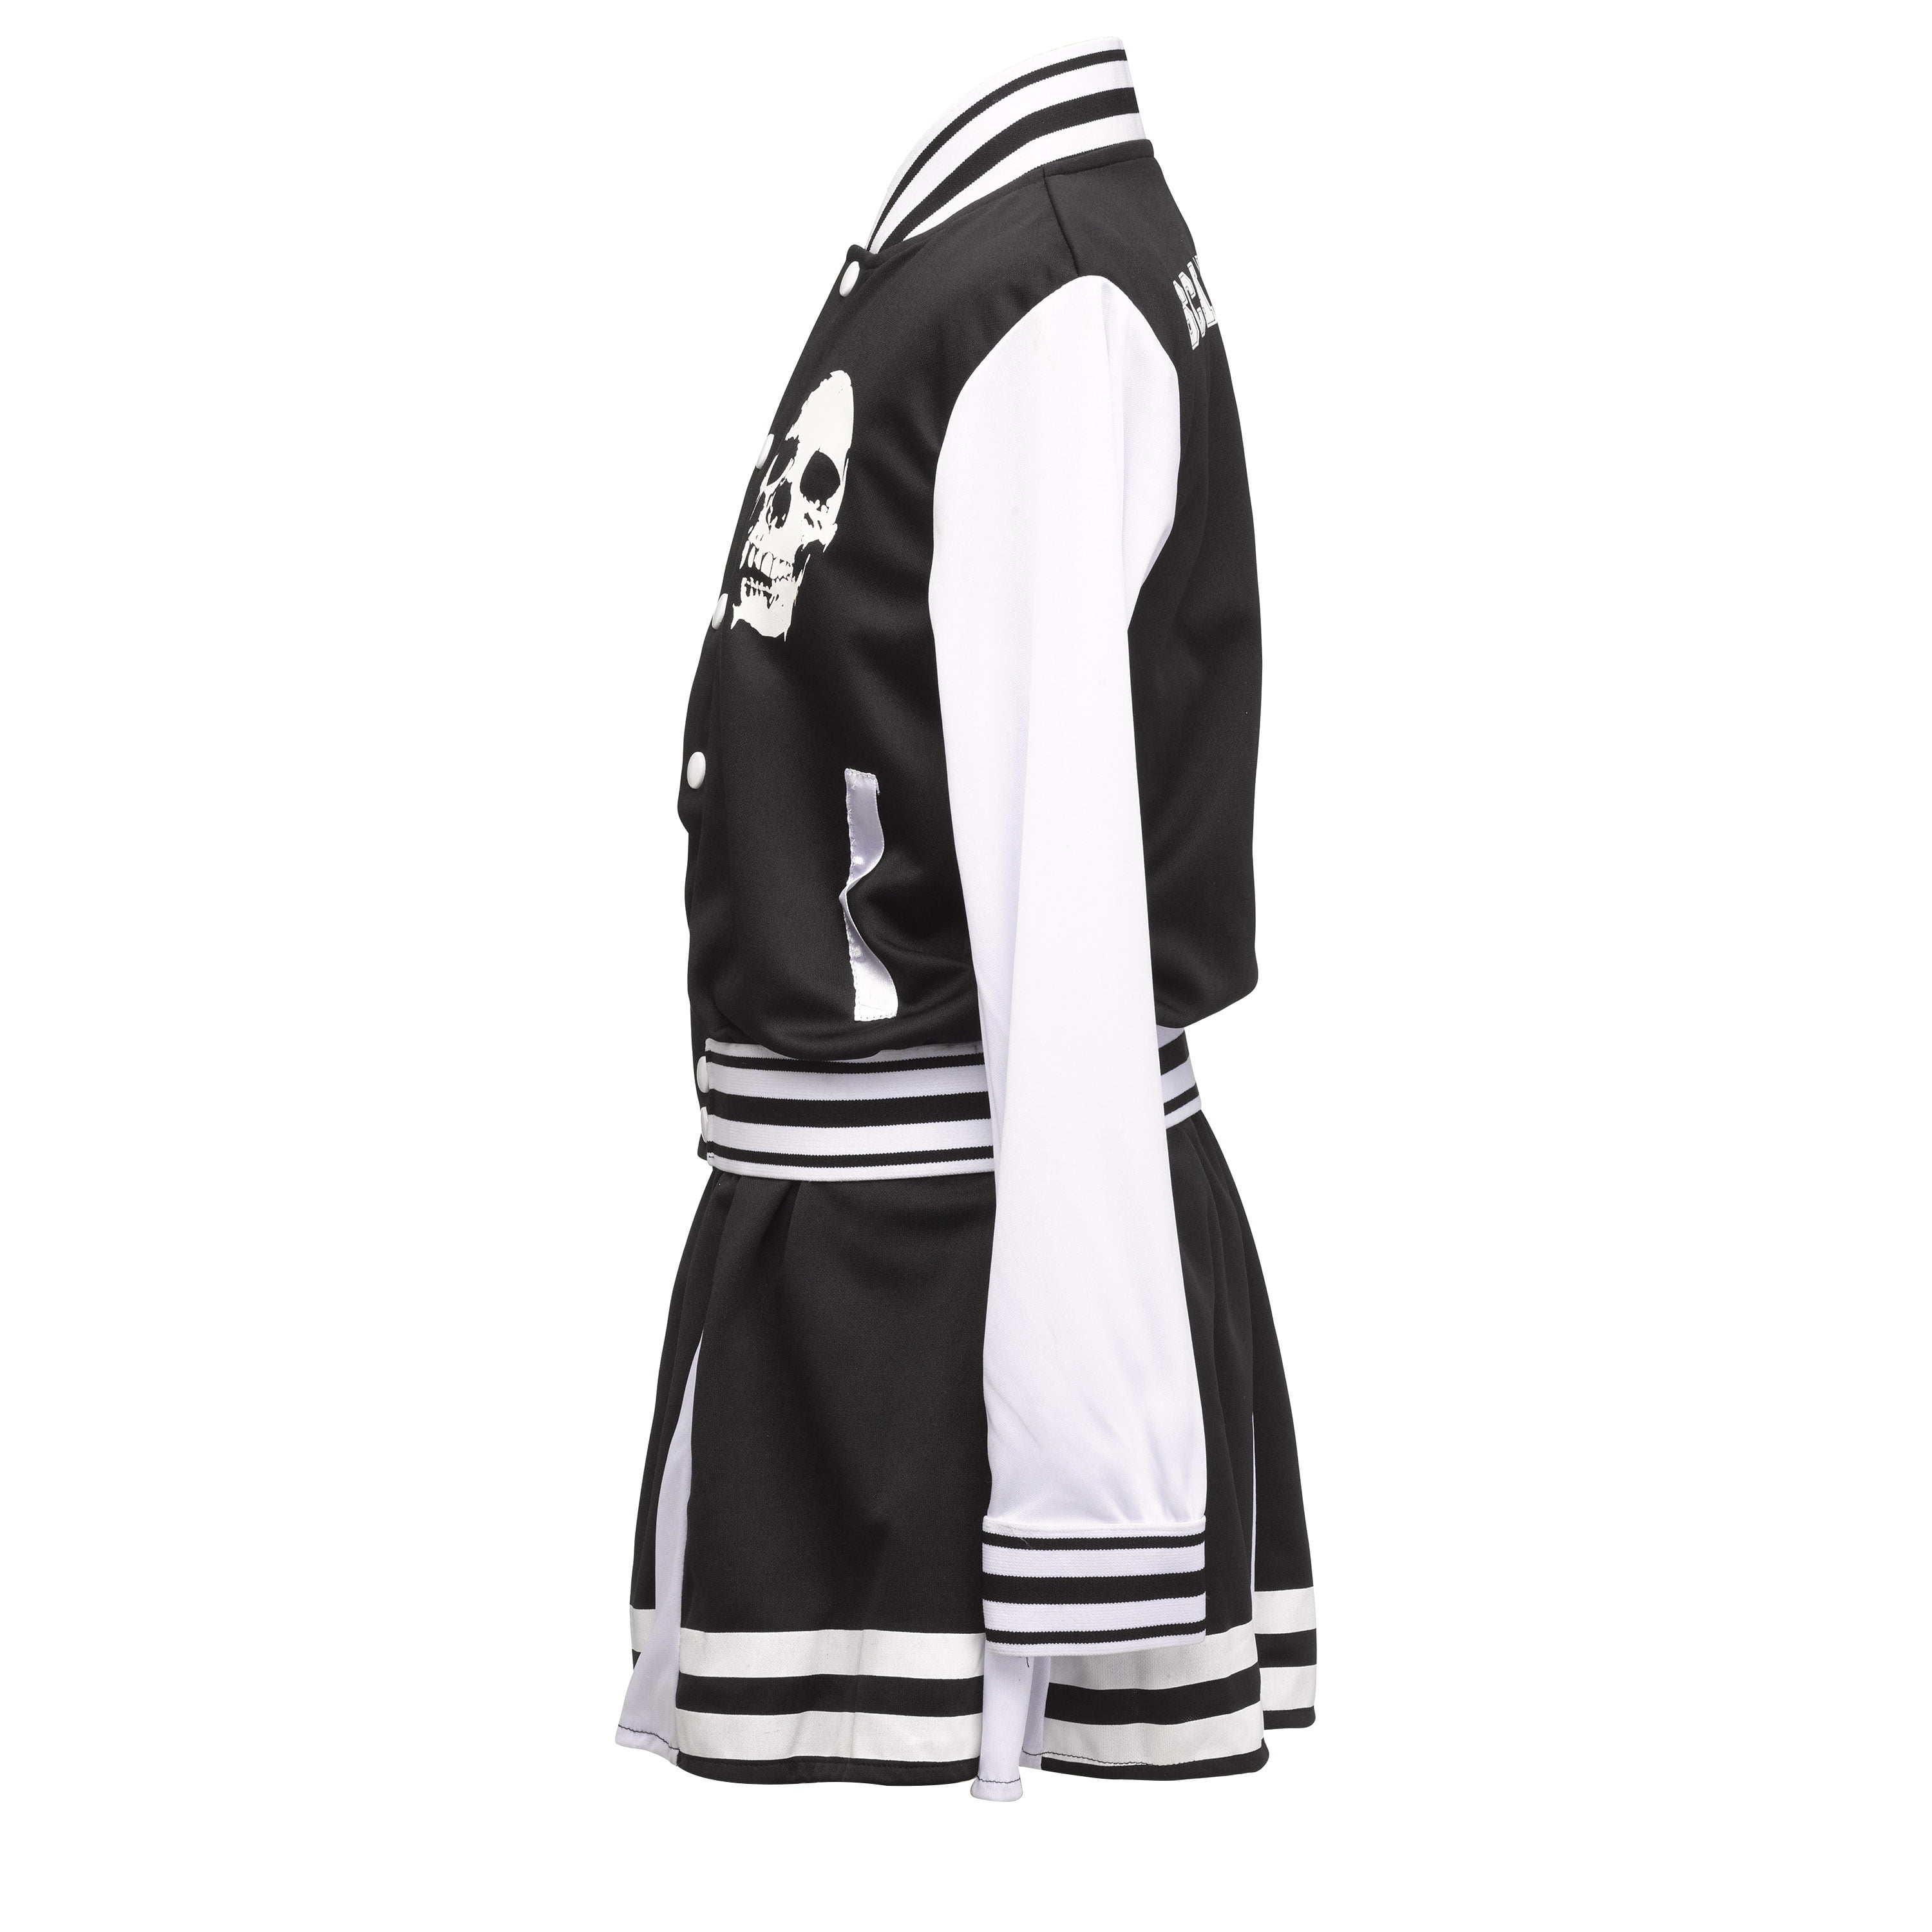 Black and White Cheerleader Costume – Hurly-Burly